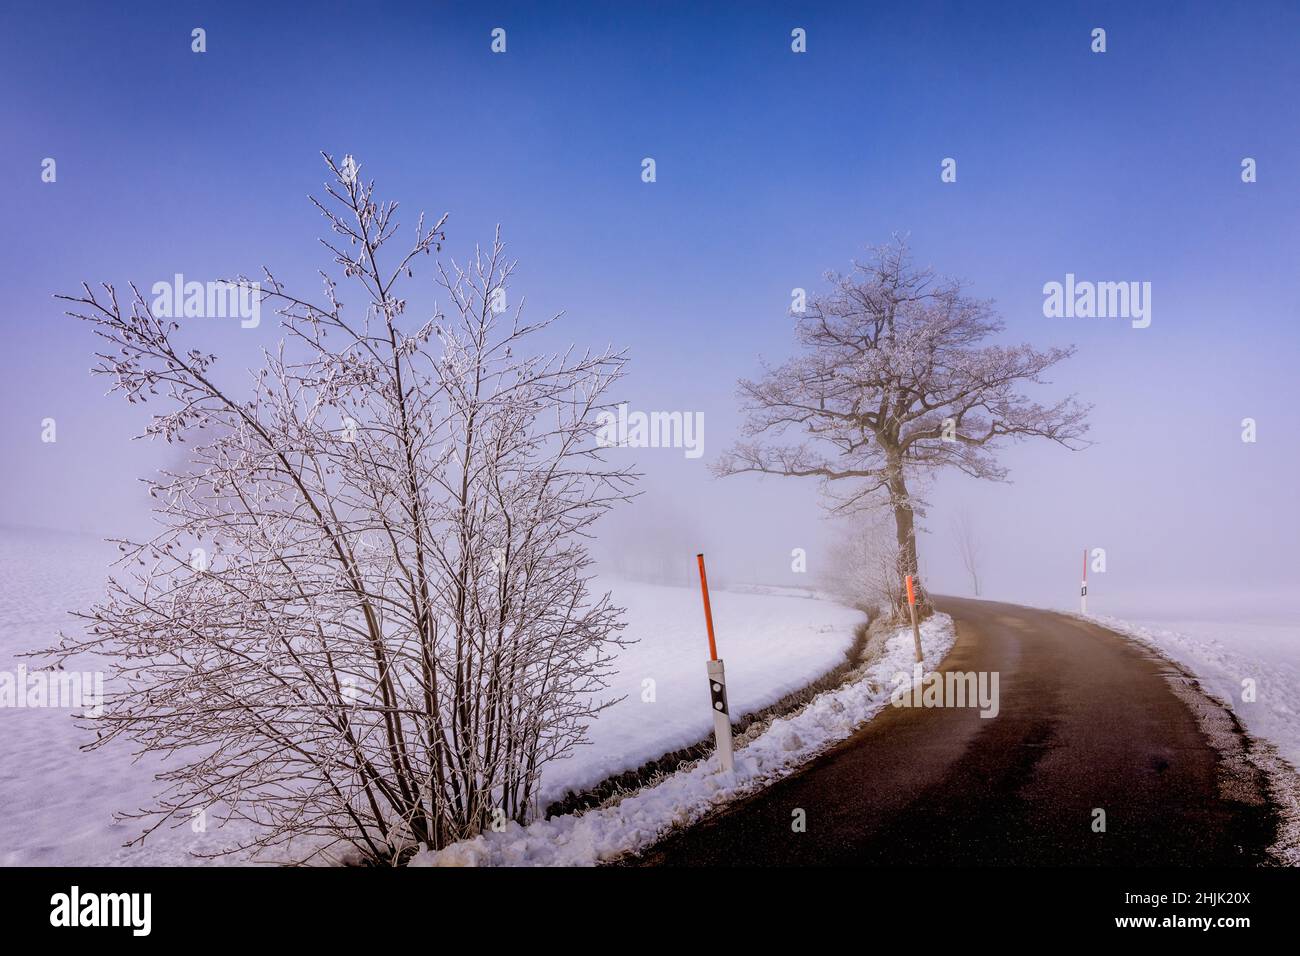 Route à travers le paysage hivernal enneigé avec des marqueurs routiers, Hirzel, Horgen, Zurich, Suisse Banque D'Images